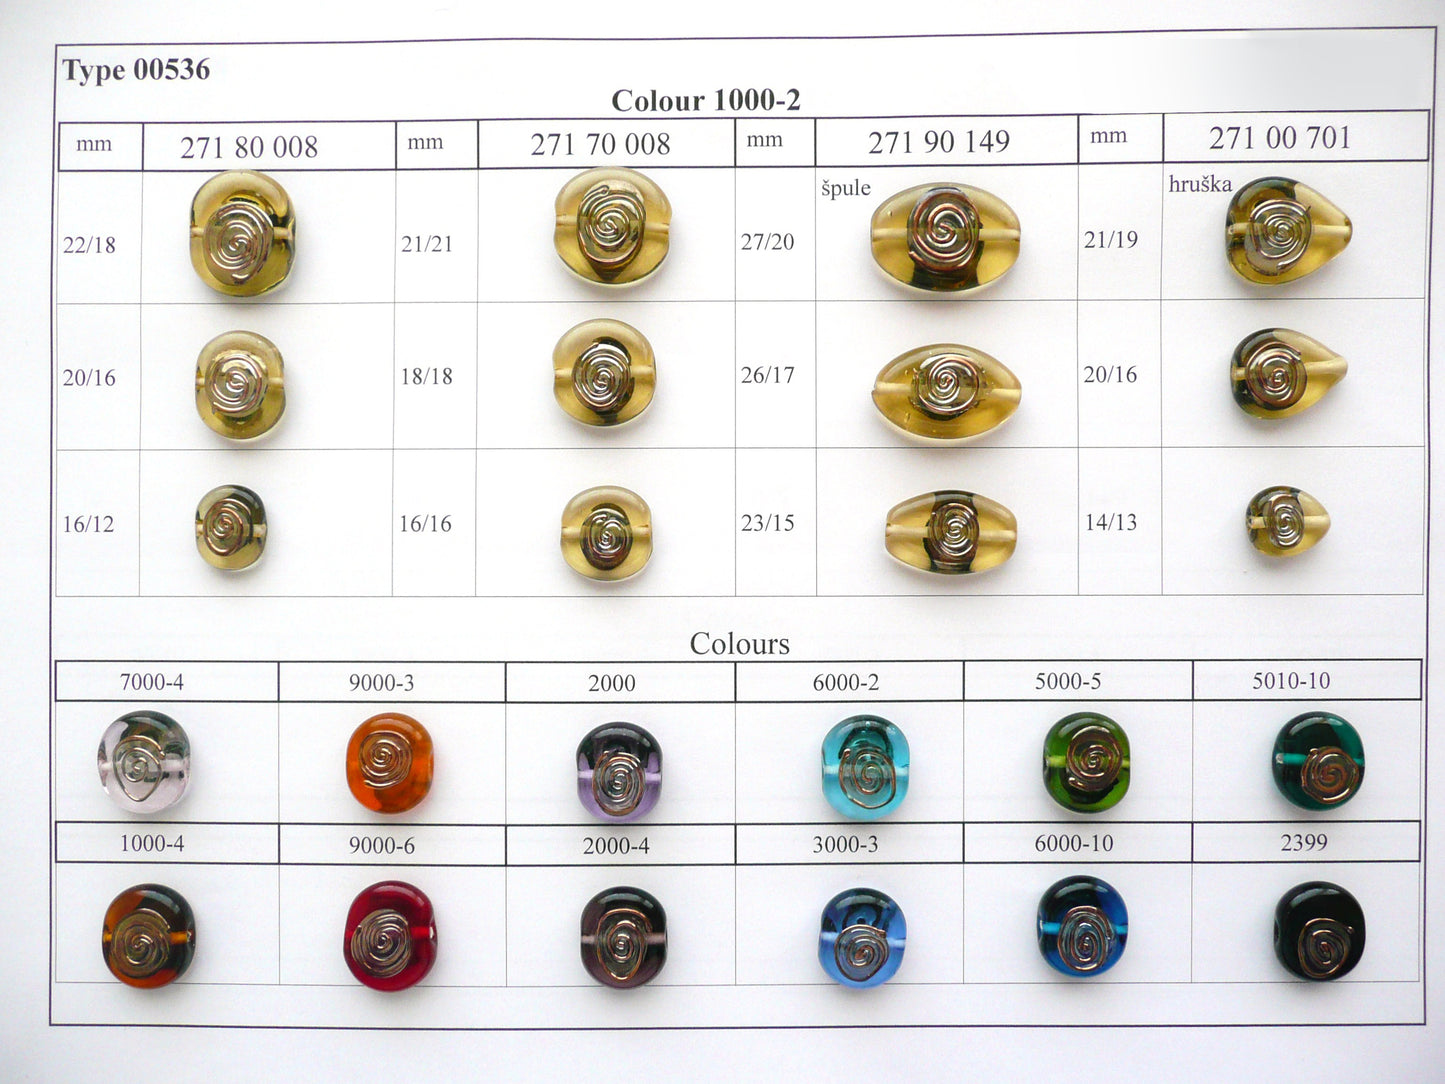 30 颗灯饰珠 536/扁三角形/泪滴 (271-00-701)，手工制作，宝仕奥莎玻璃，捷克共和国